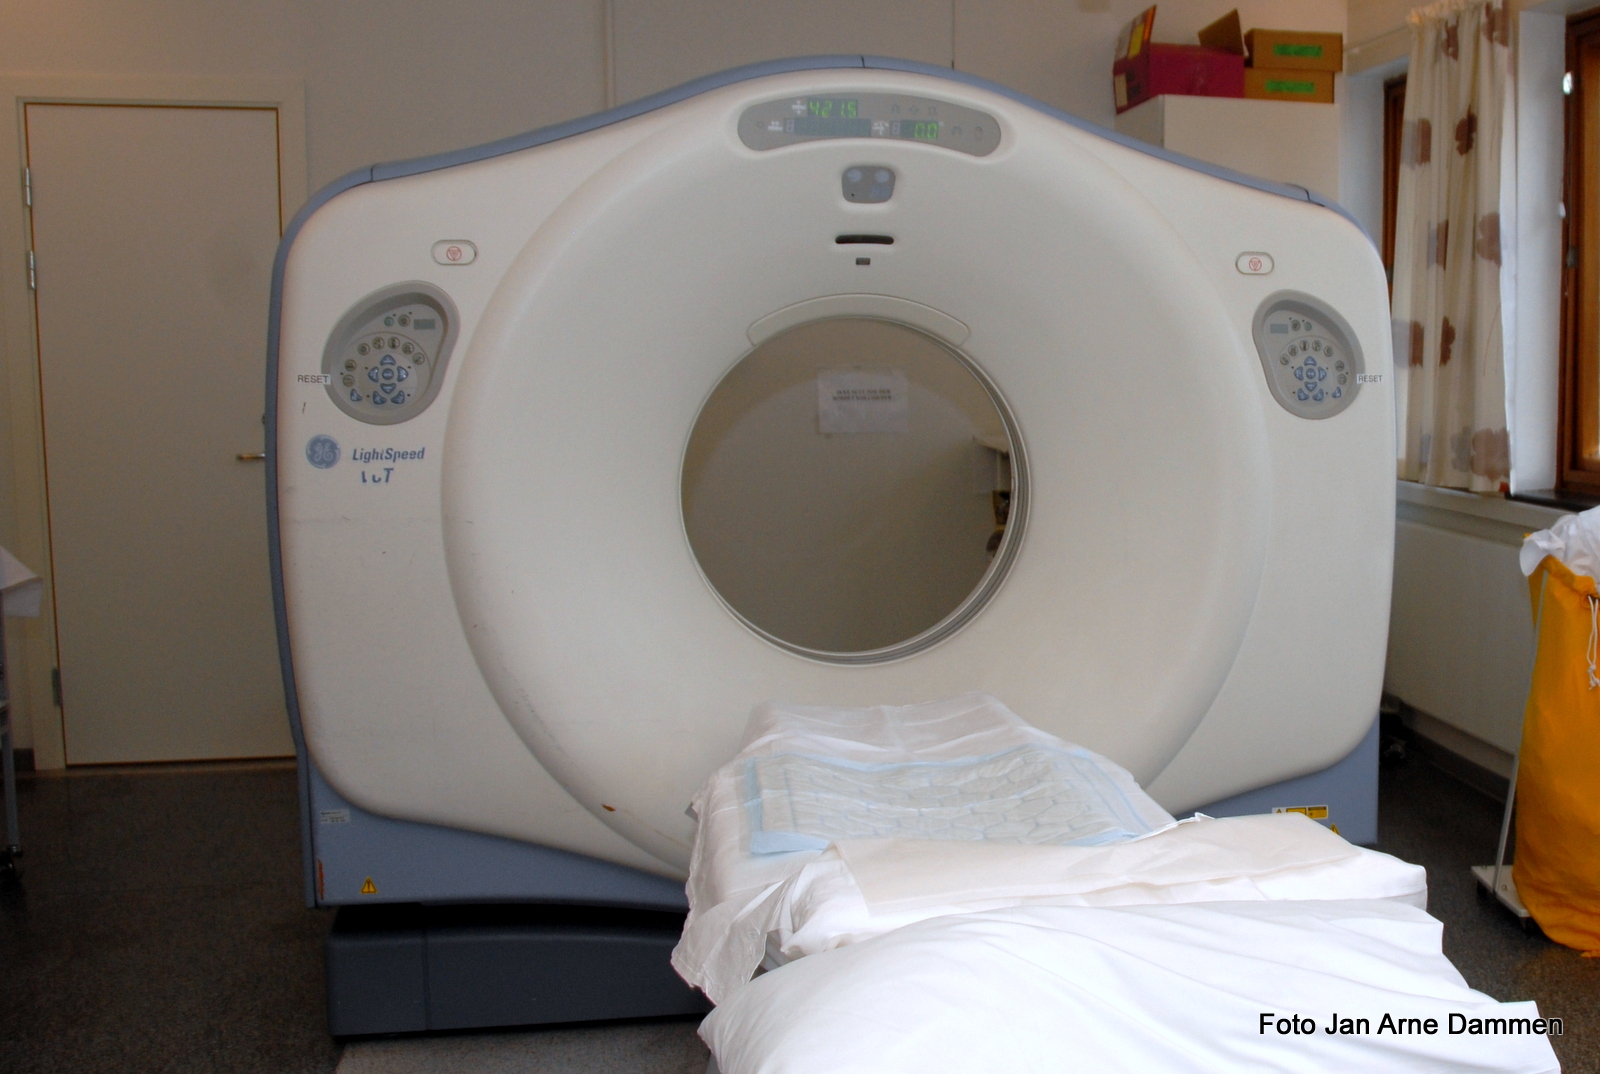 Inne på sykehuset blir det foretatt en full medisinsk undersøkelse og det tas CT eller MR av hodet for å finne ut om det er hjerneinfarkt eller hjerneblødning. Foto Jan Arne Dammen